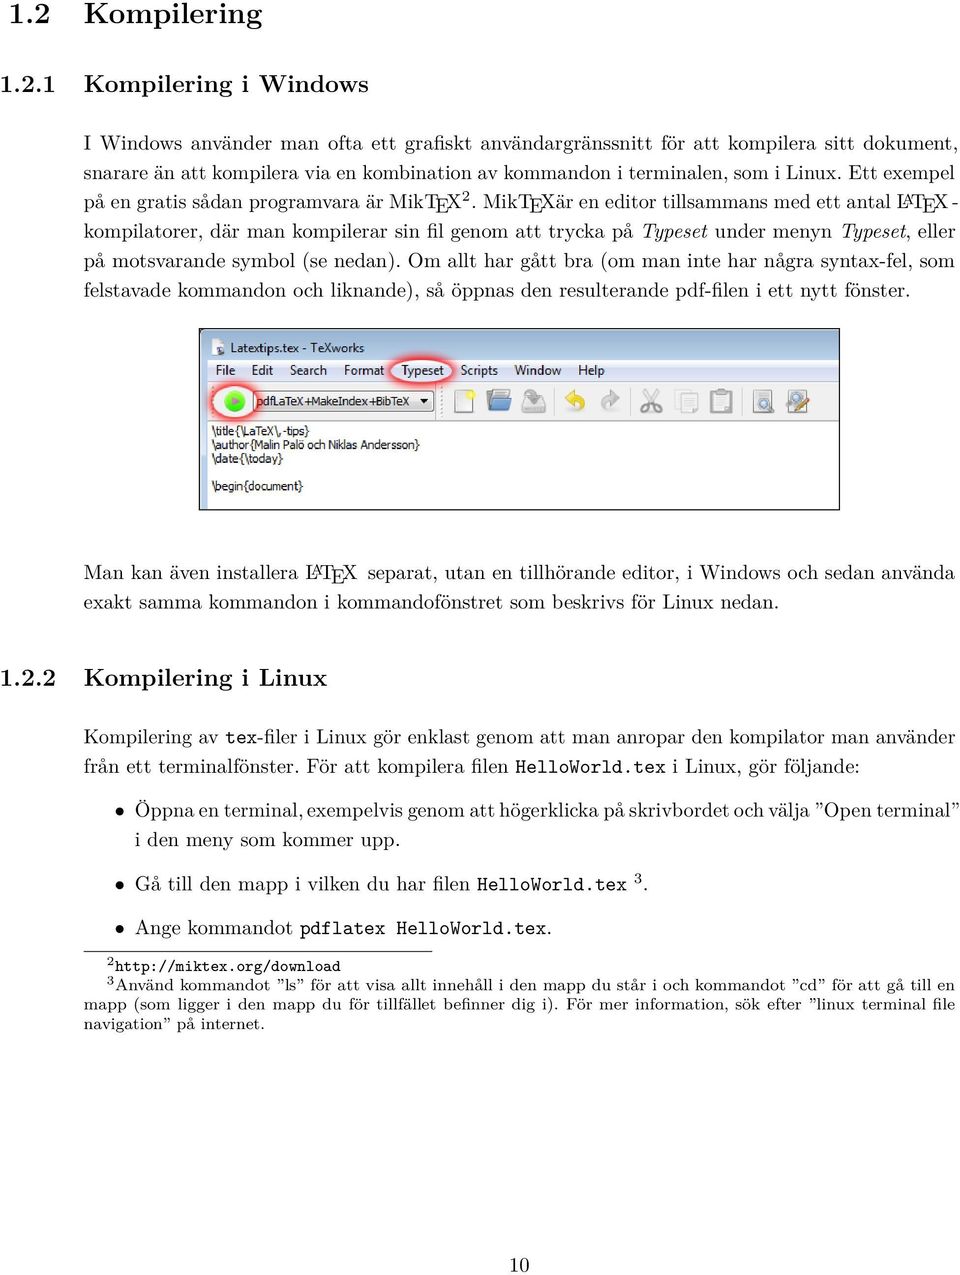 MikTEXär en editor tillsammans med ett antal L A TEX - kompilatorer, där man kompilerar sin fil genom att trycka på Typeset under menyn Typeset, eller på motsvarande symbol (se nedan).